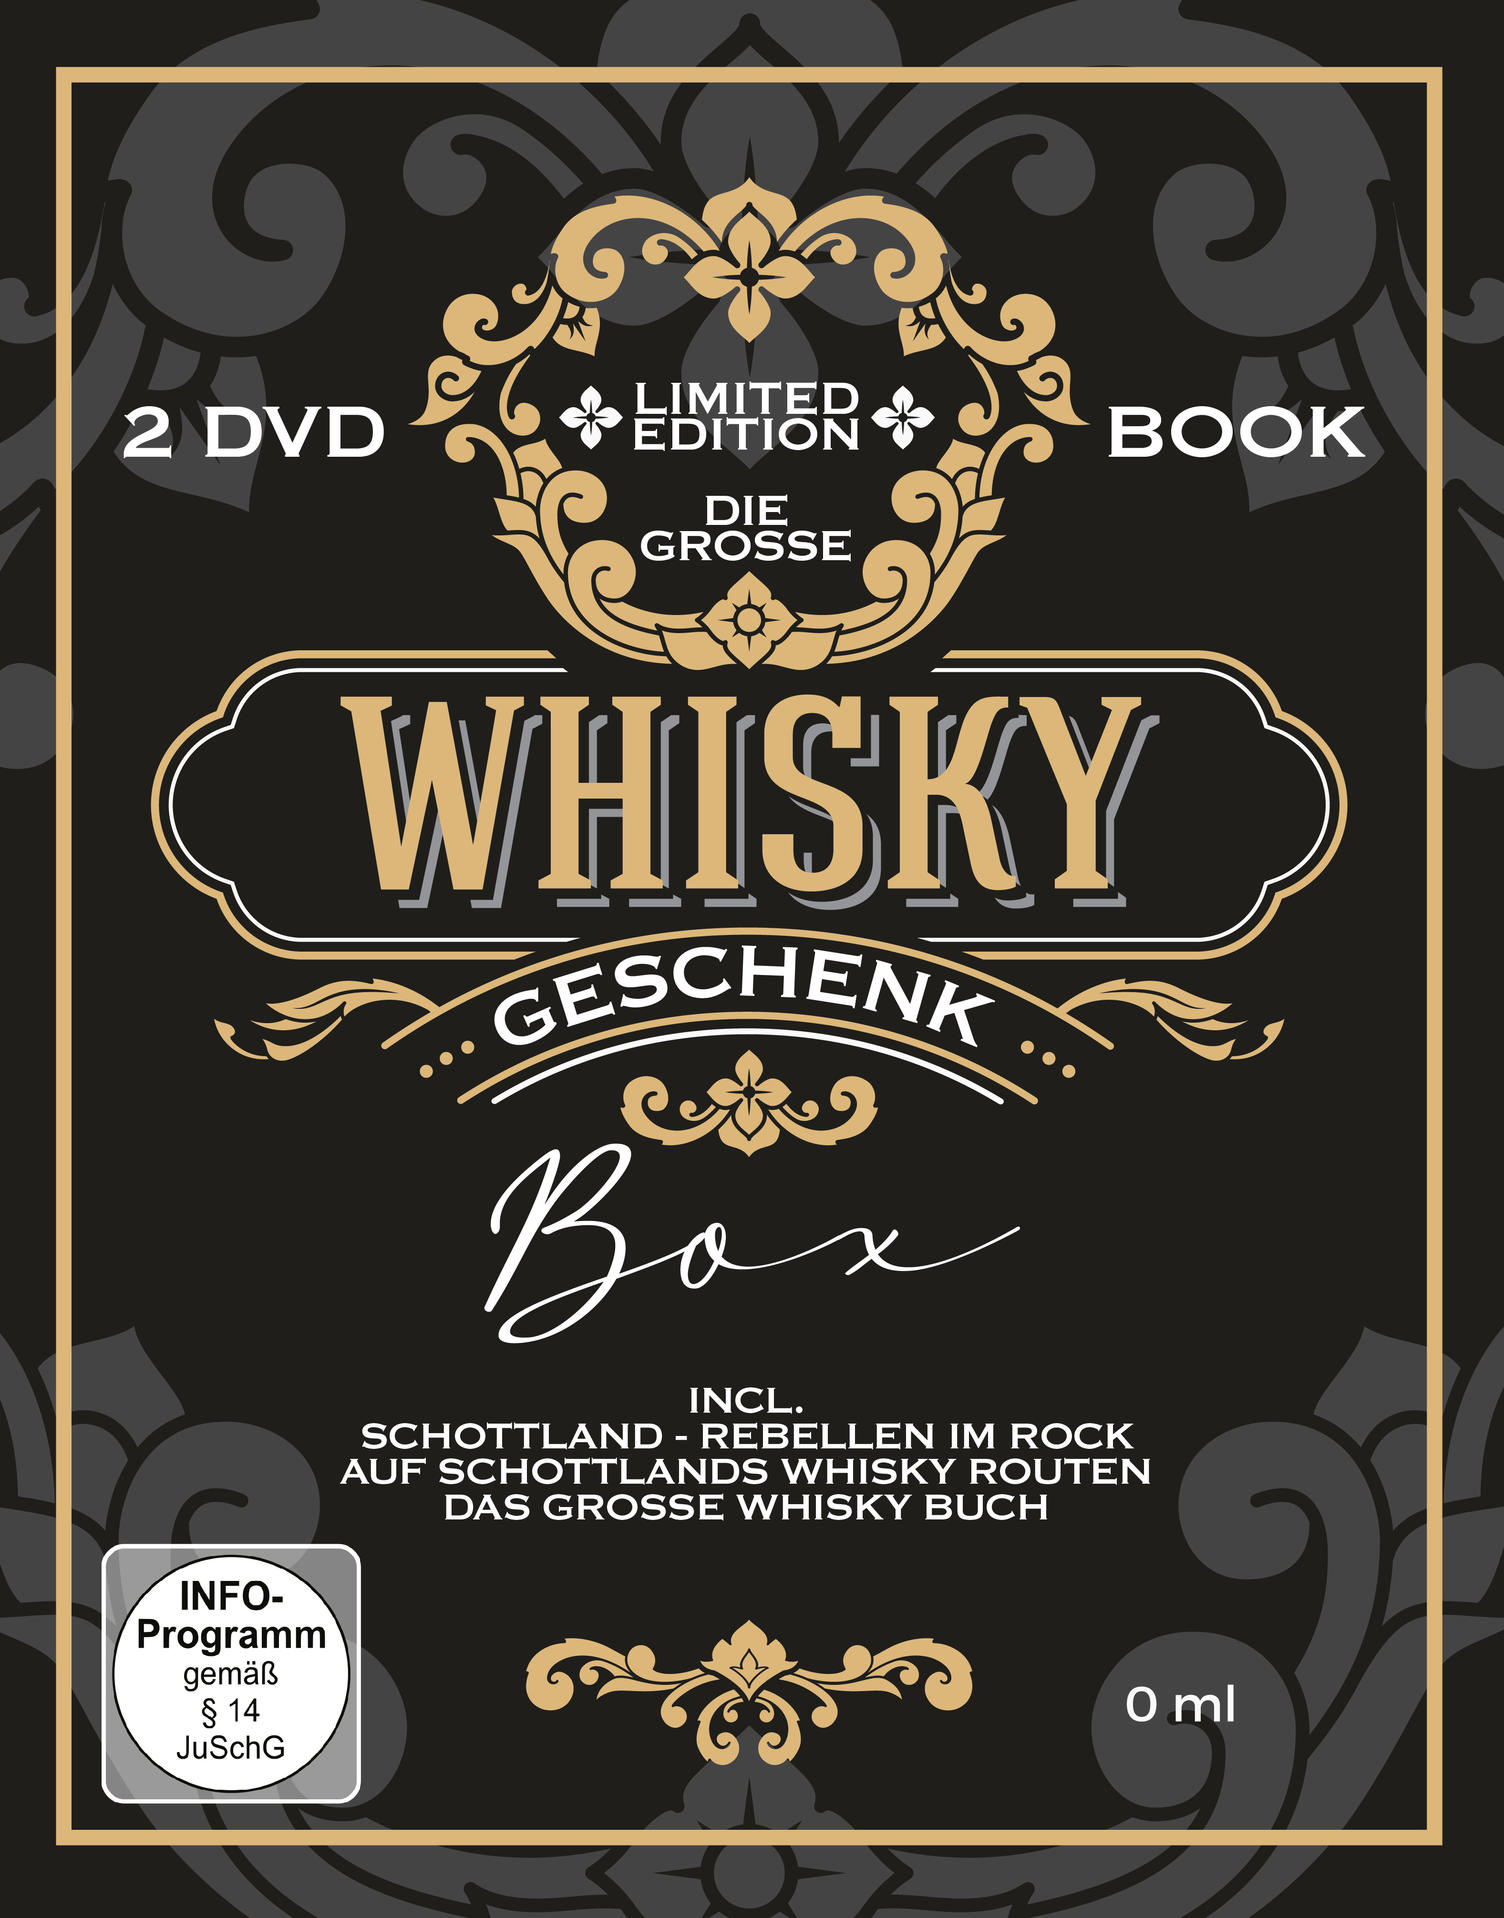 Whisky-Geschenk-Box Buch Die inkl. große DVD